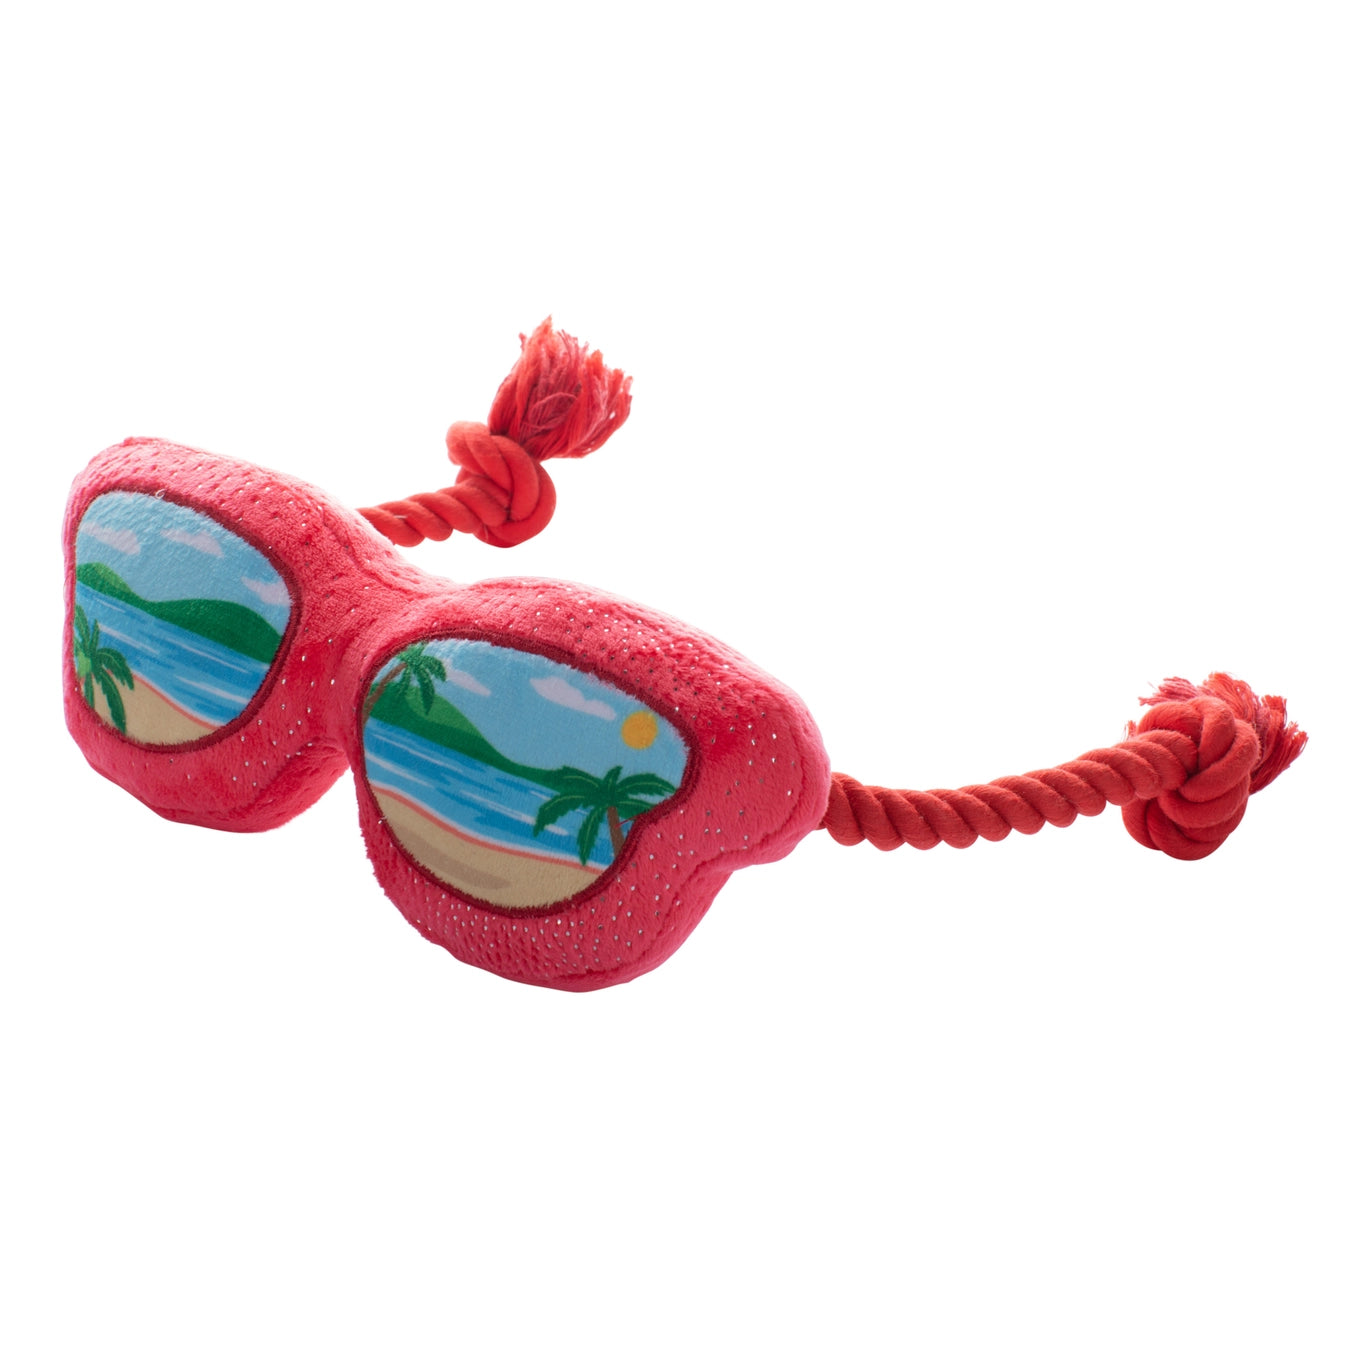 Fringe Plush Dog Toy - Sand & See Sunglasses